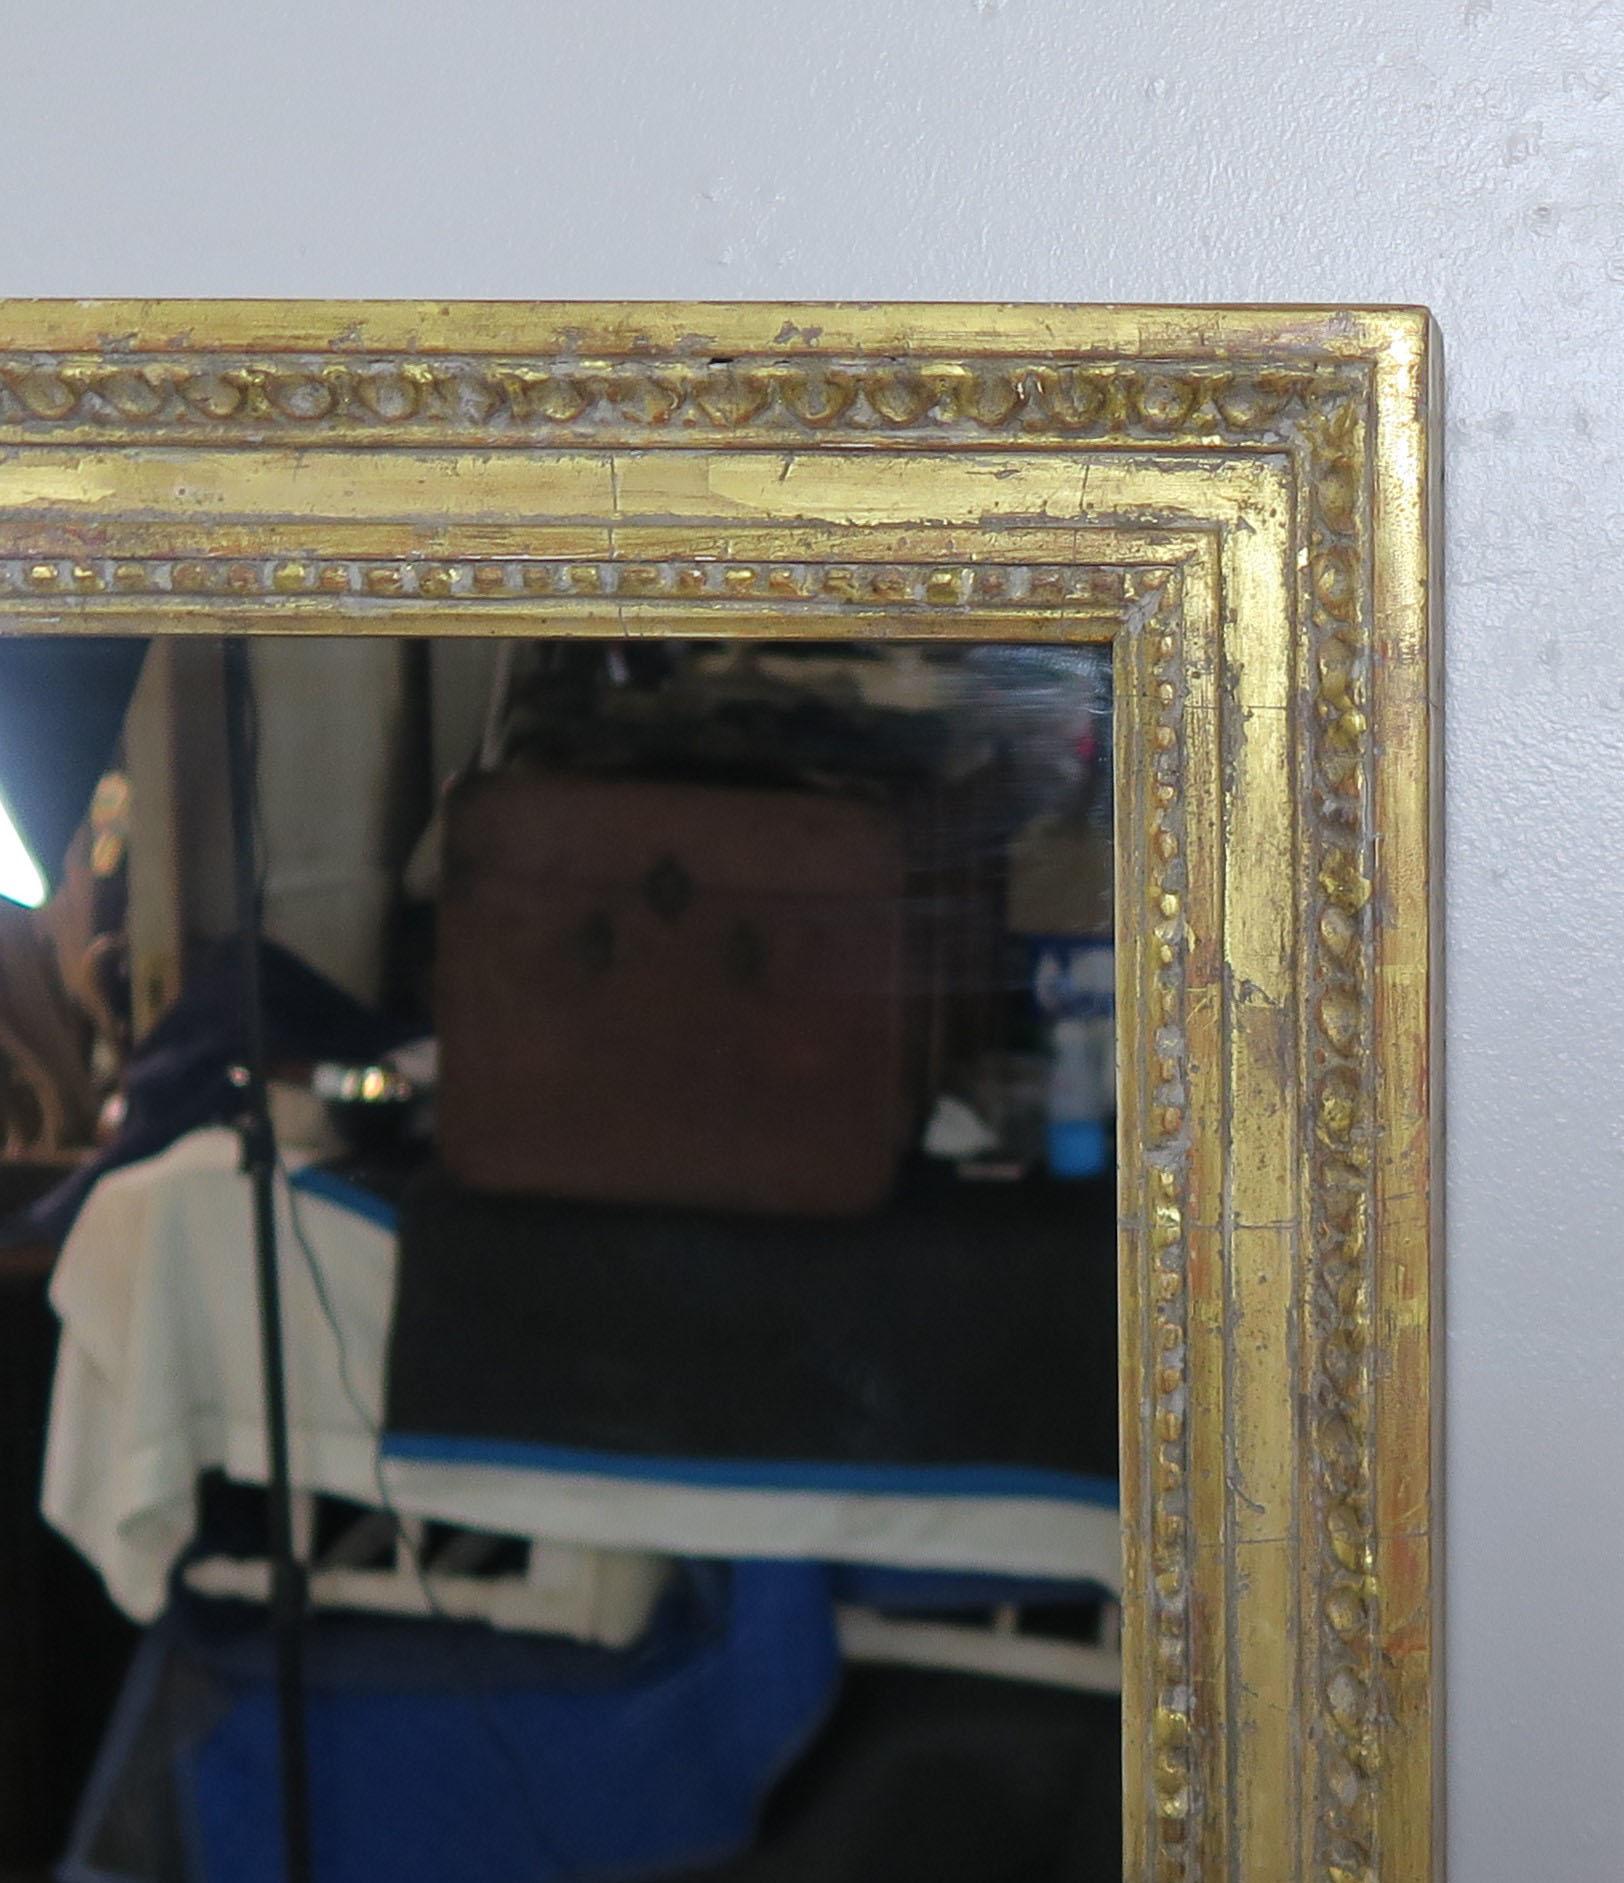 Paire de miroirs sculptés à la main à la feuille d'or 22 carats, conçus par Melissa Levinson. Nous pouvons personnaliser la taille et la finition de ces miroirs pour votre travail de conception.
Ils sont disponibles en deux tailles
D 2 x L 36 x H 66